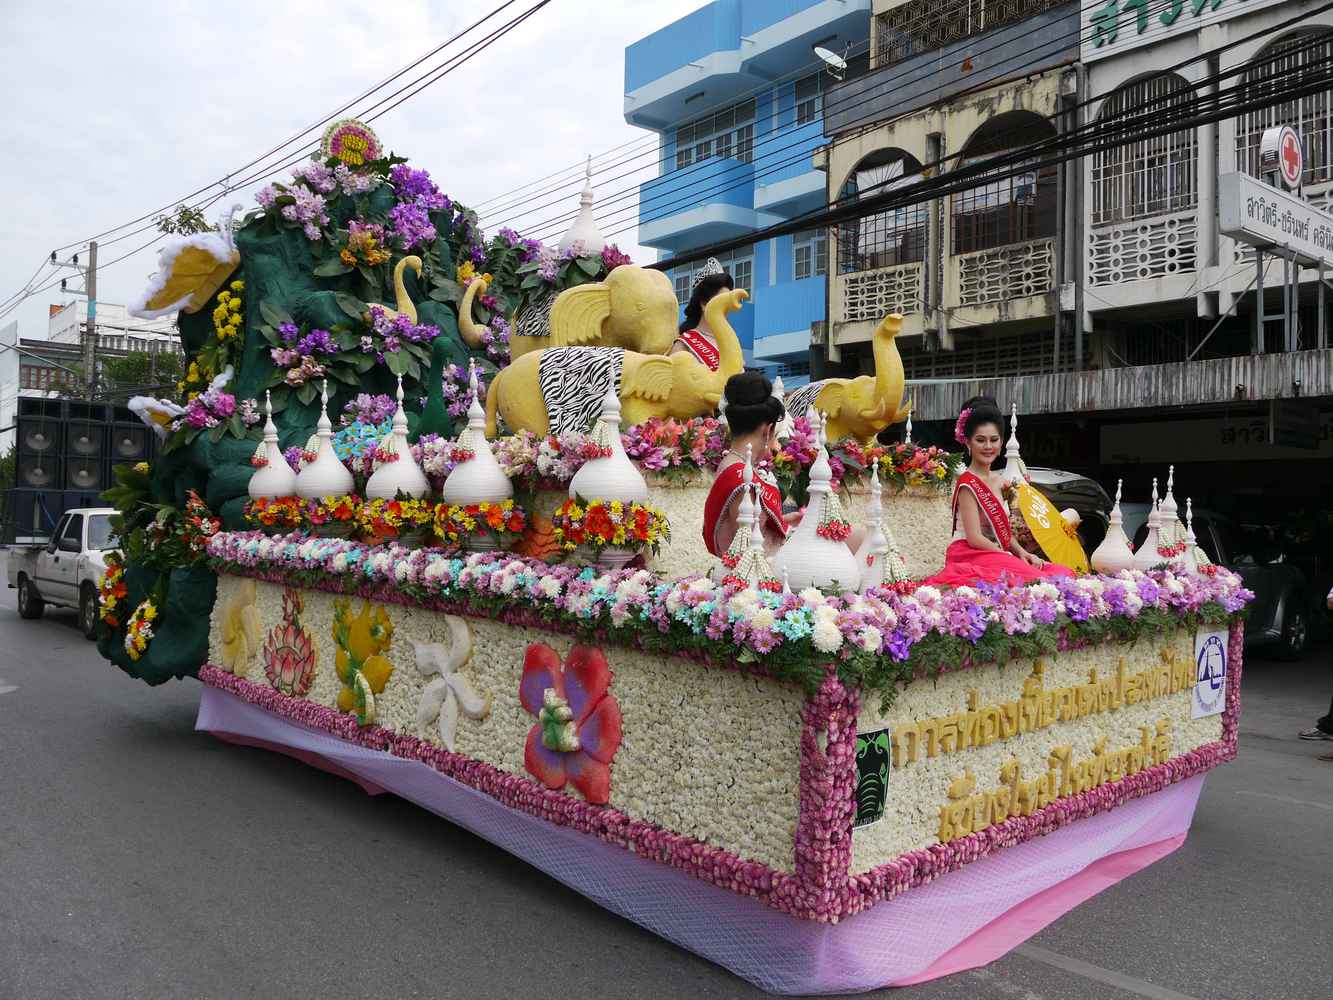 Derechos: https://commons.wikimedia.org/wiki/File:Flower_Festival_Chiang_Mai_-_P1150935.JPG